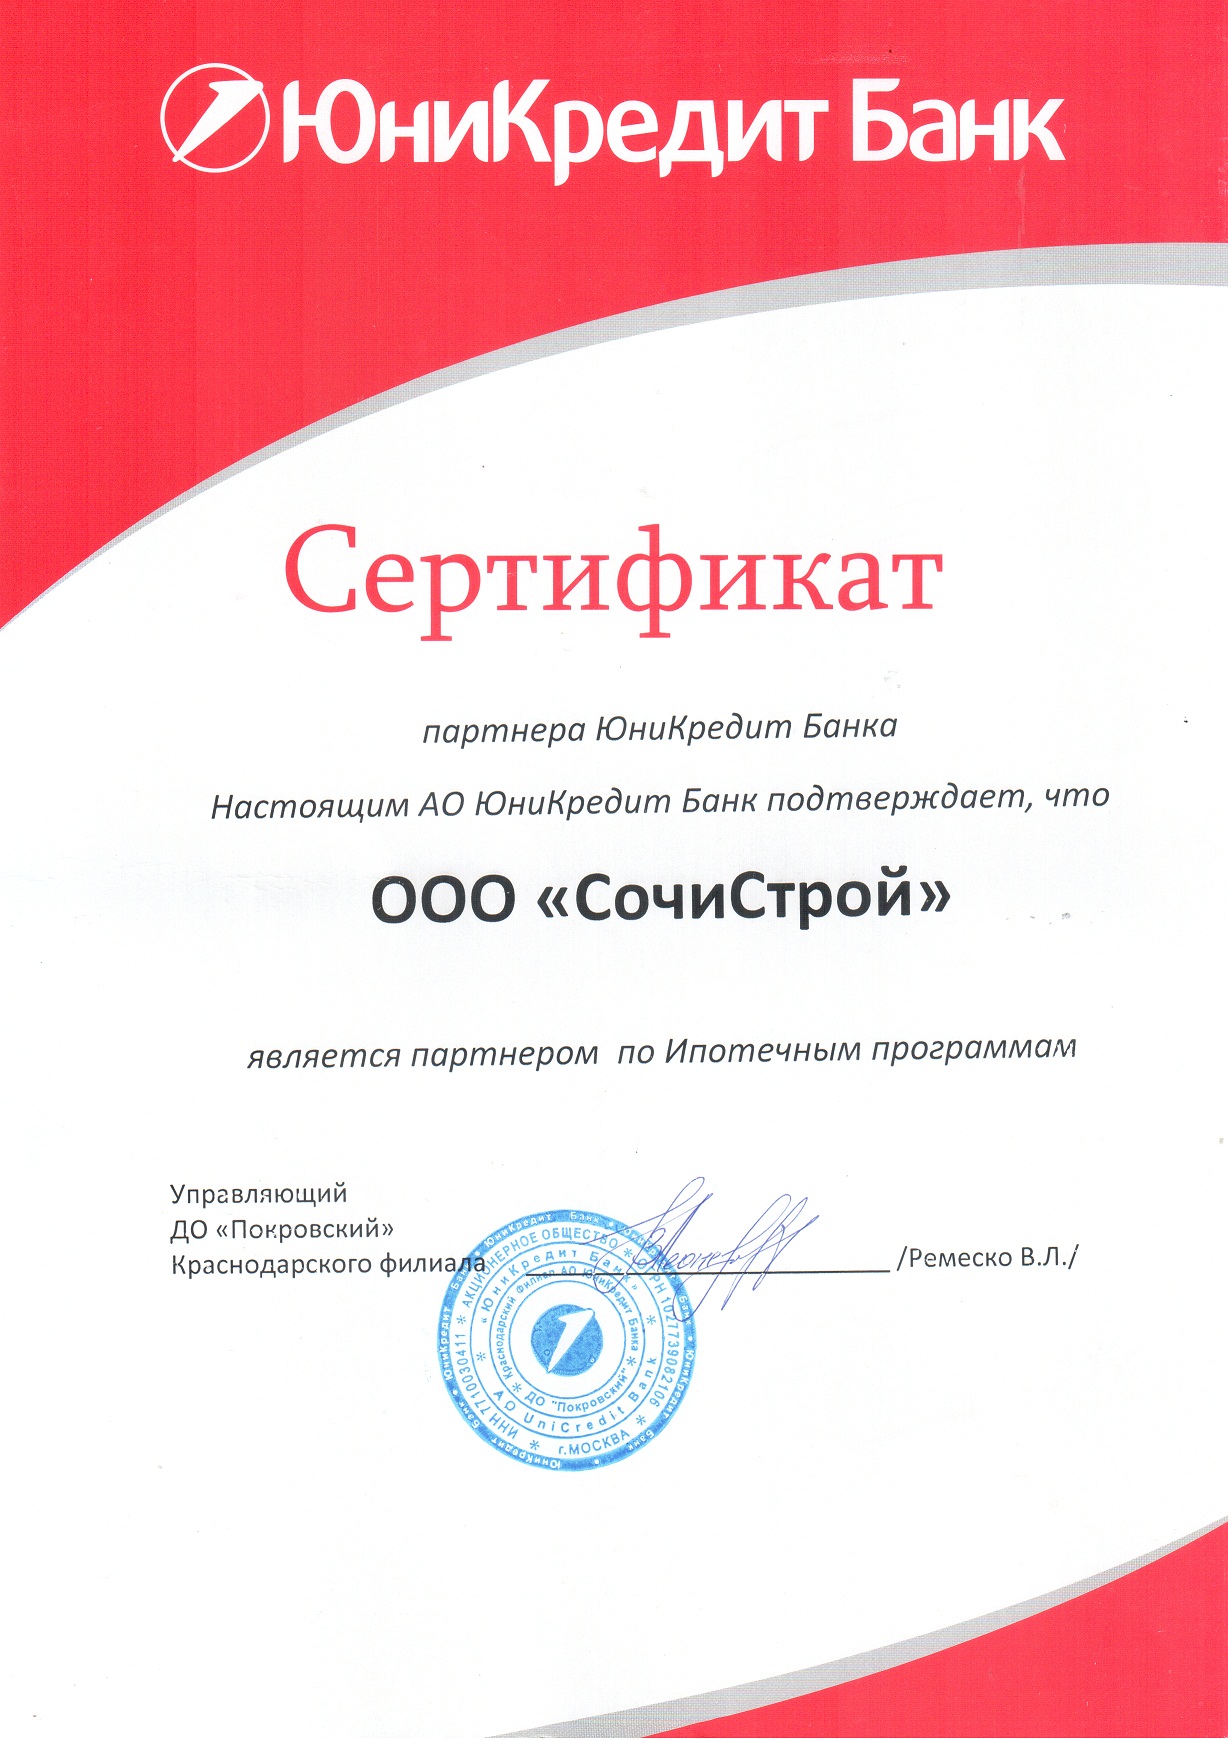 Сертификат партнера ЮниКредит Банка